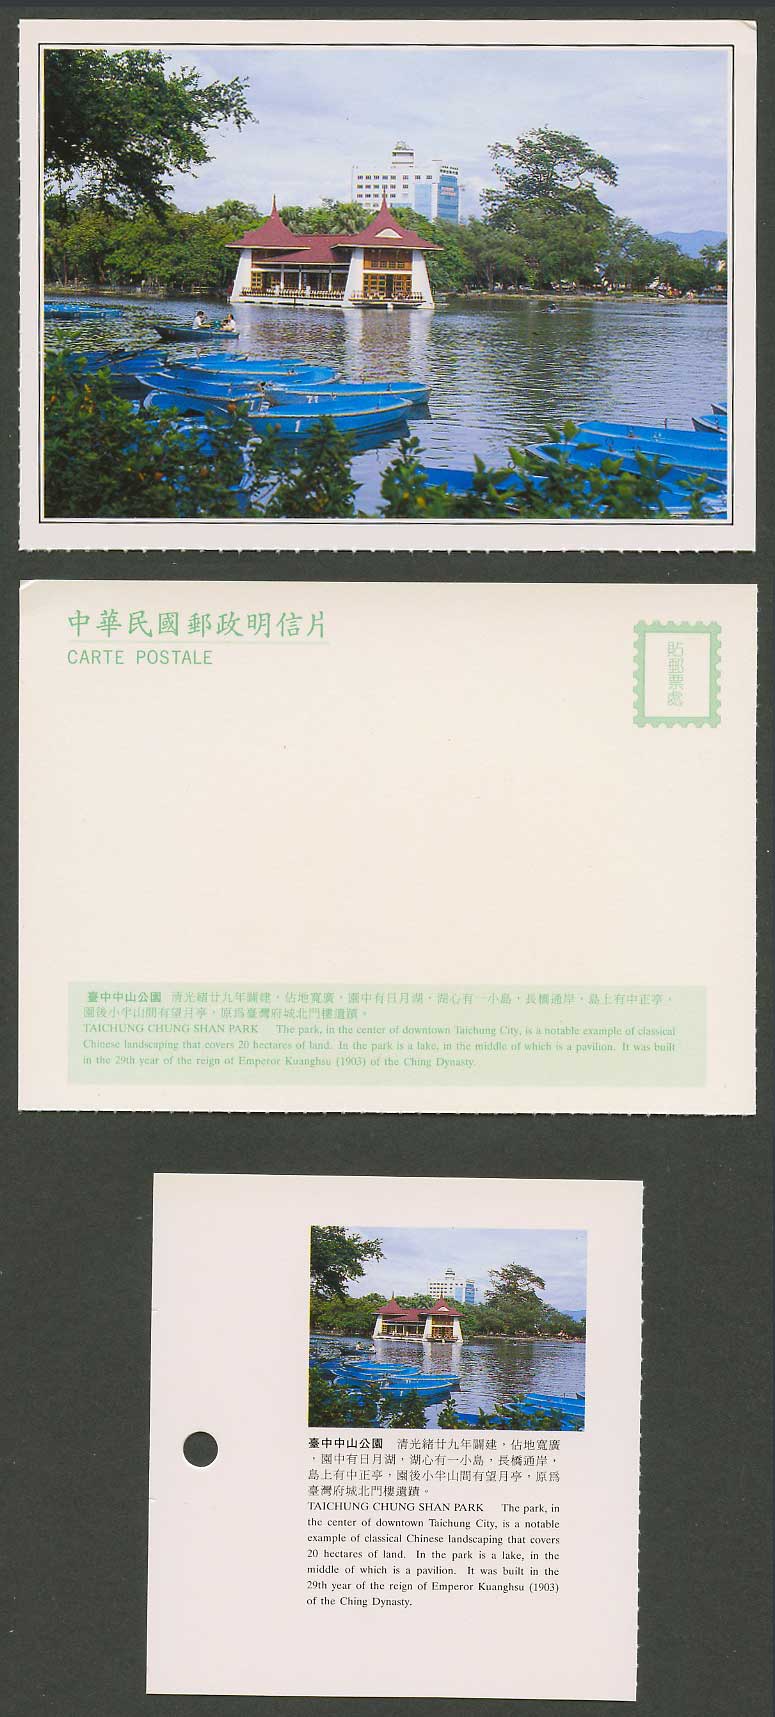 Taiwan Formosa China Postcard Taichung Chung Shan Park Lake Boats 臺中中山公園 日月湖 望月亭